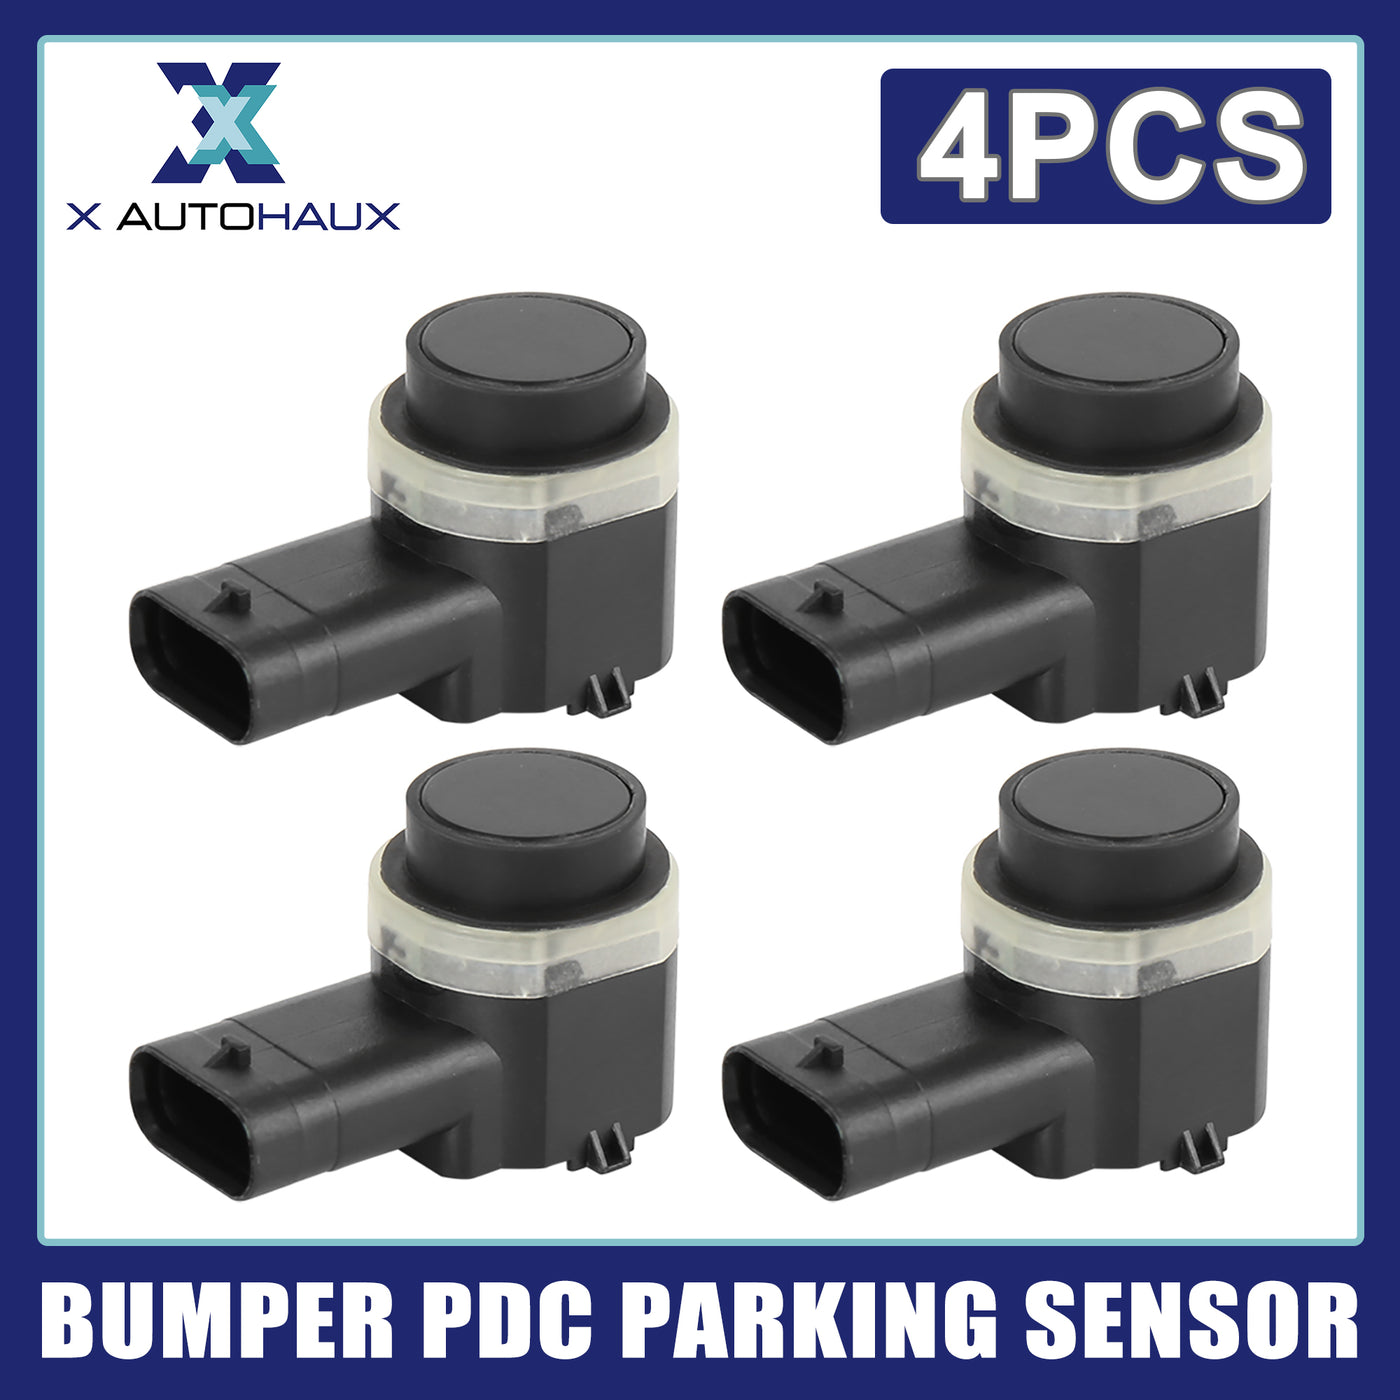 X AUTOHAUX 4pcs 4H0919275 Bumper Reverse PDC Parking Sensor for Audi A4 A5 A6 Q3 Q4 Q7 S4 S5 S8 R8 for Seat for VW Touareg CC